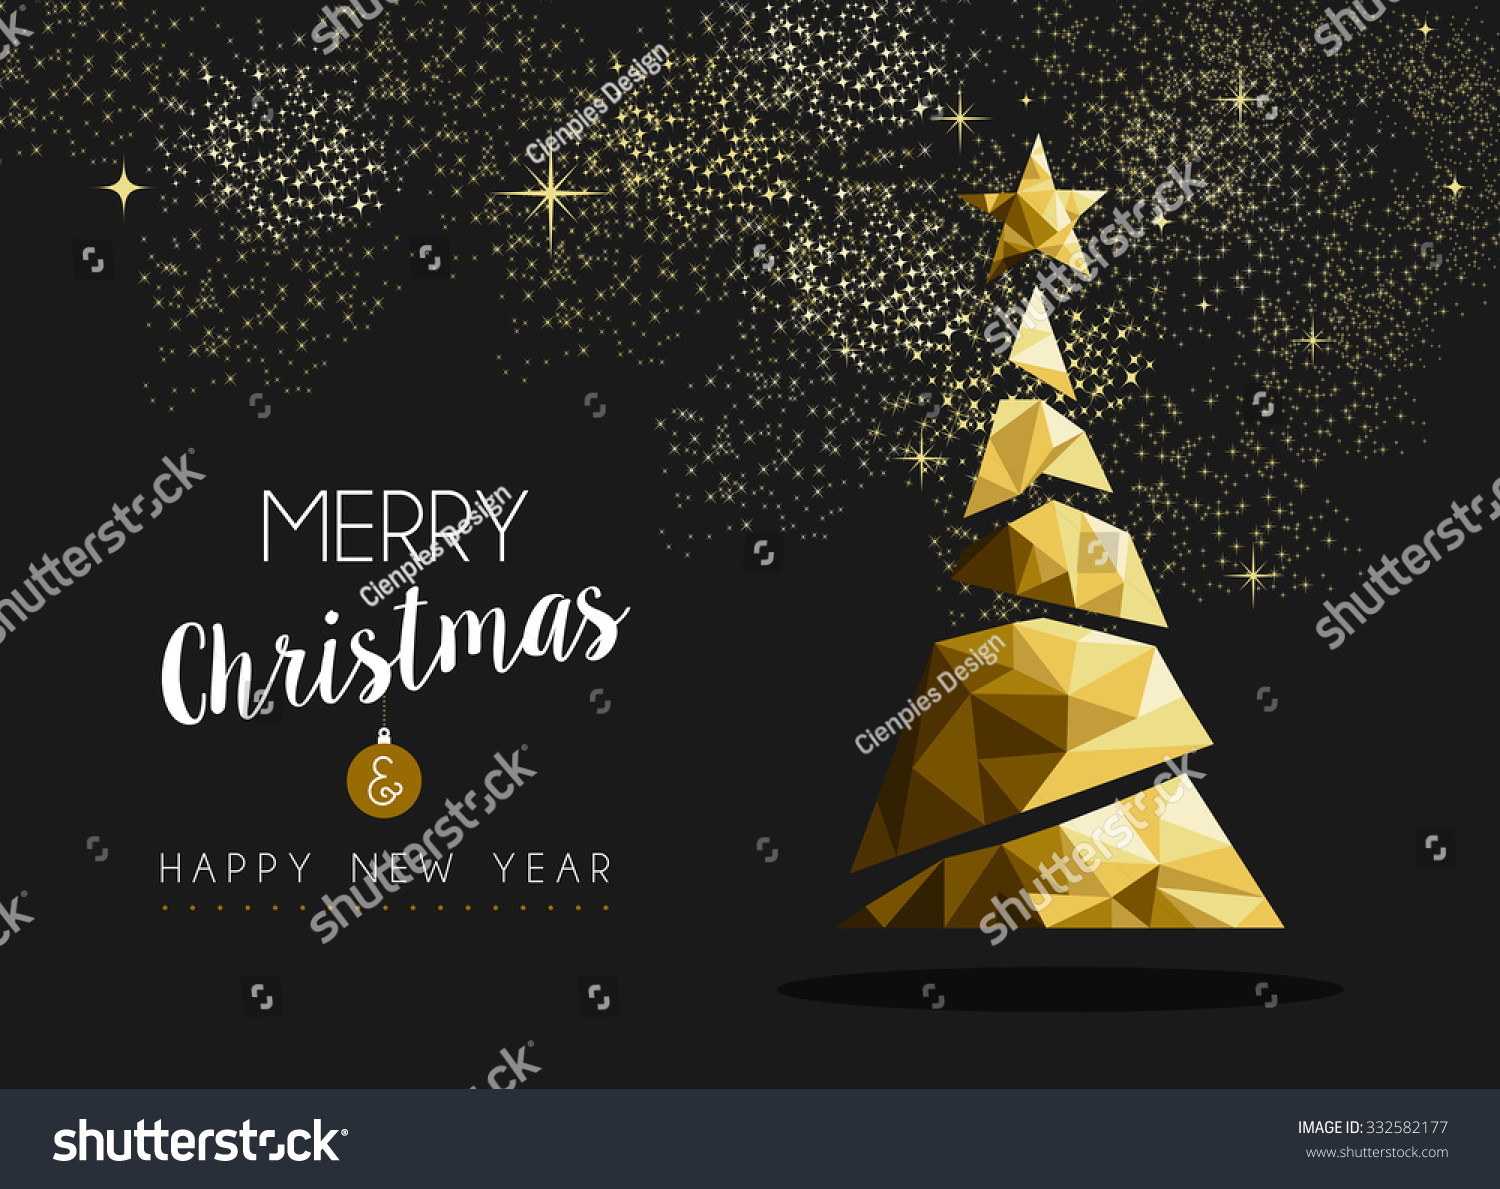 Albero Di Natale Zecchino Doro.Immagine Vettoriale Stock 332582177 A Tema Buon Natale E Felice Anno Nuovo Royalty Free